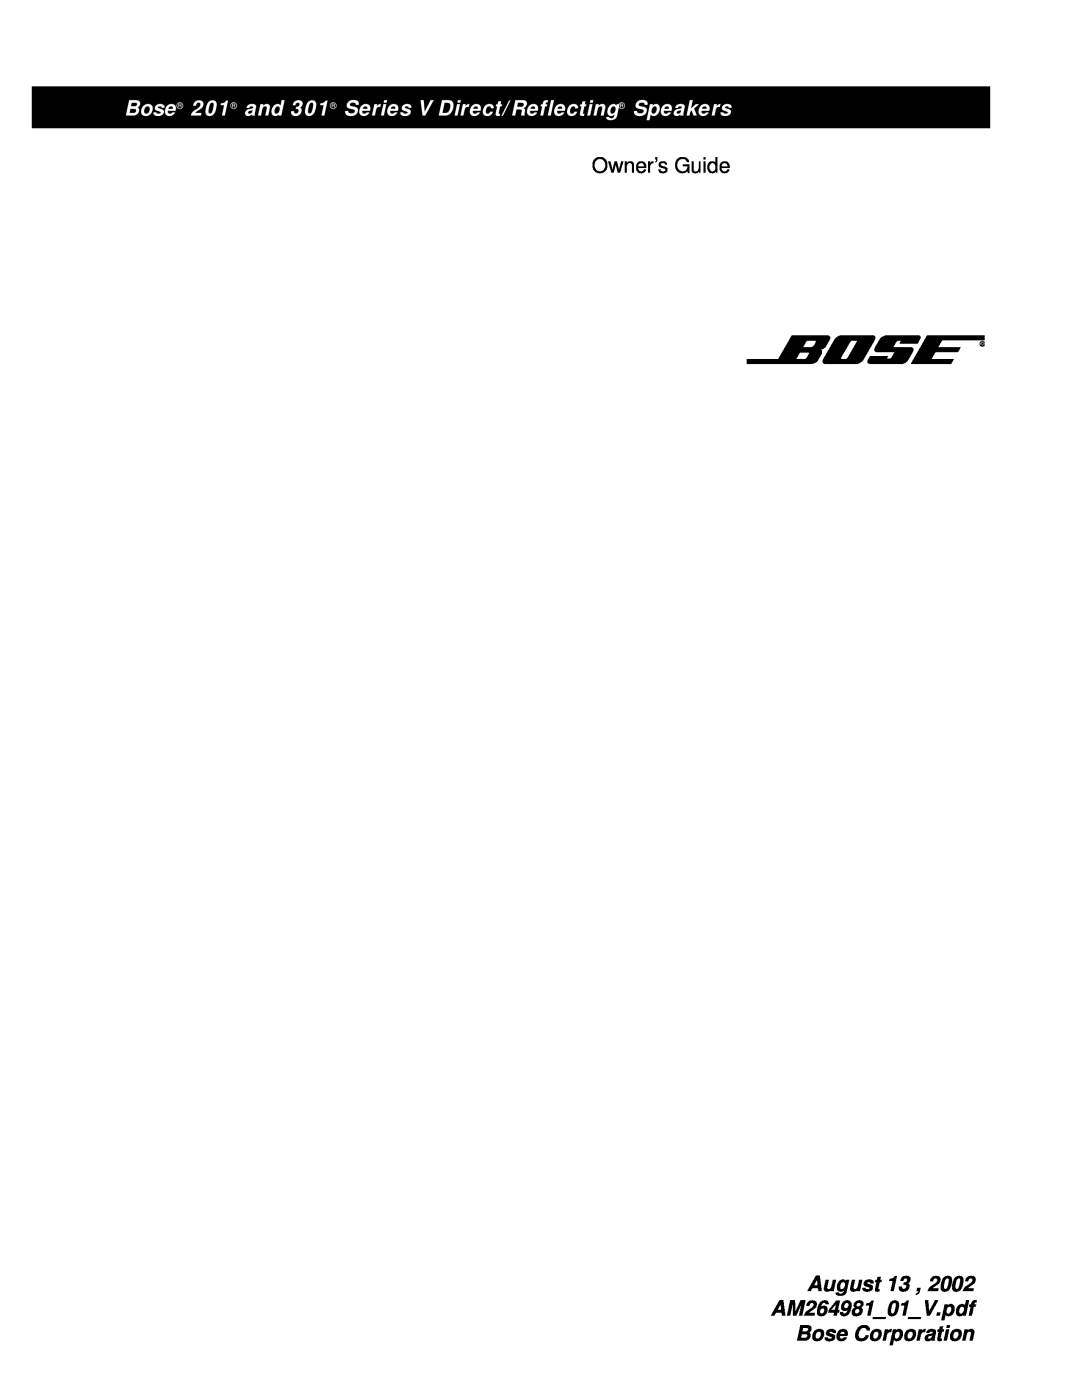 Bose 201, 301 manual Owner’s Guide 